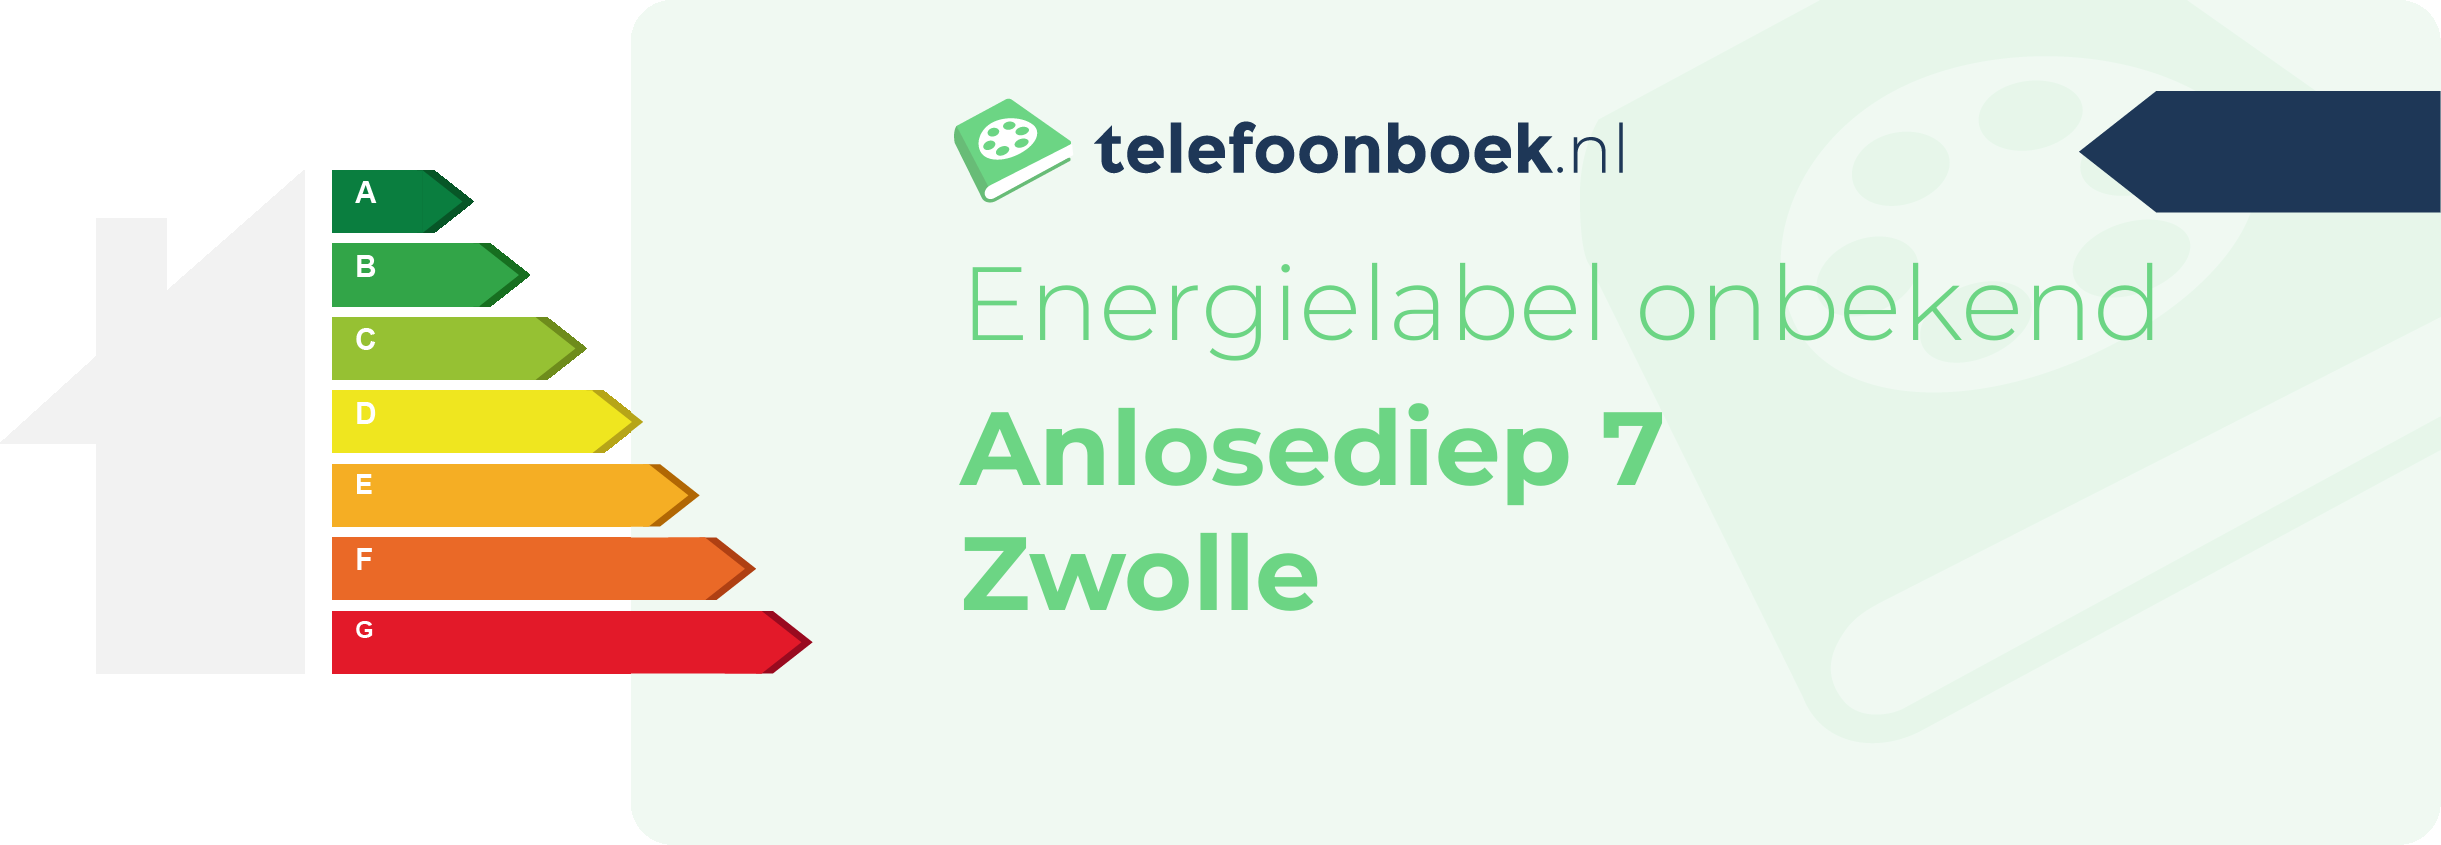 Energielabel Anlosediep 7 Zwolle